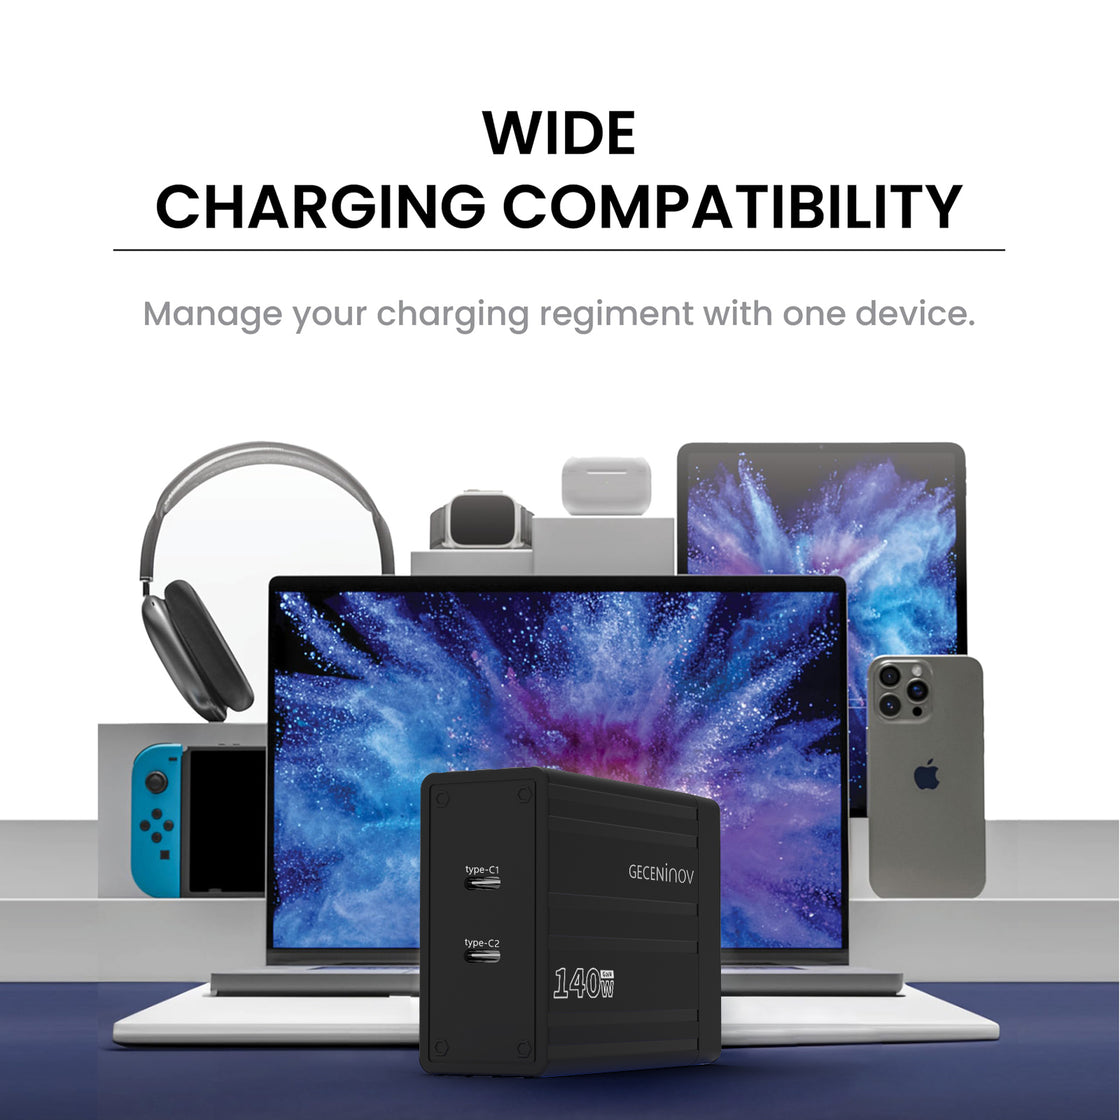 Geceninov 140W USB C  Fast Charging Block 2 Ports GaN Charger 2USB-C